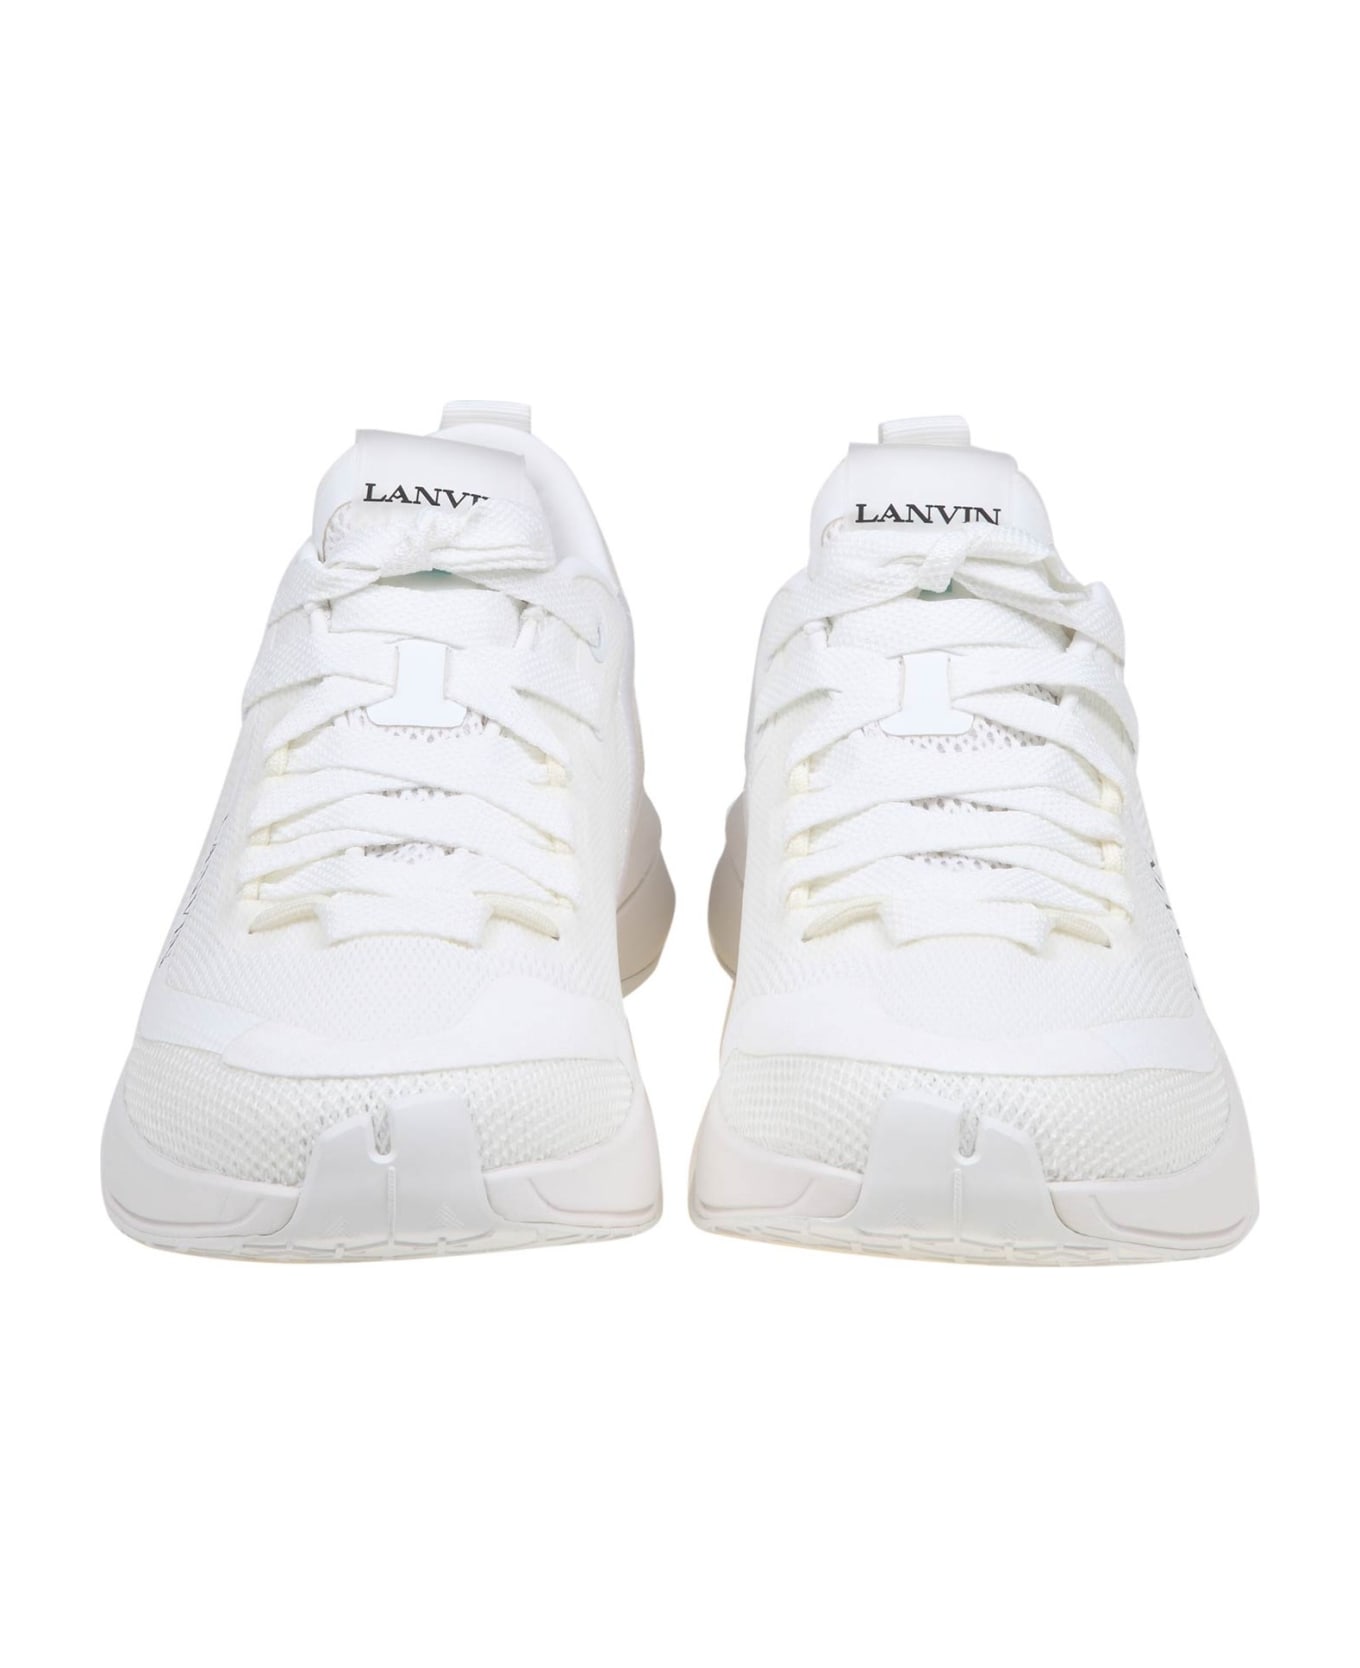 Lanvin Runner Sneakers In White Mesh - White/White スニーカー